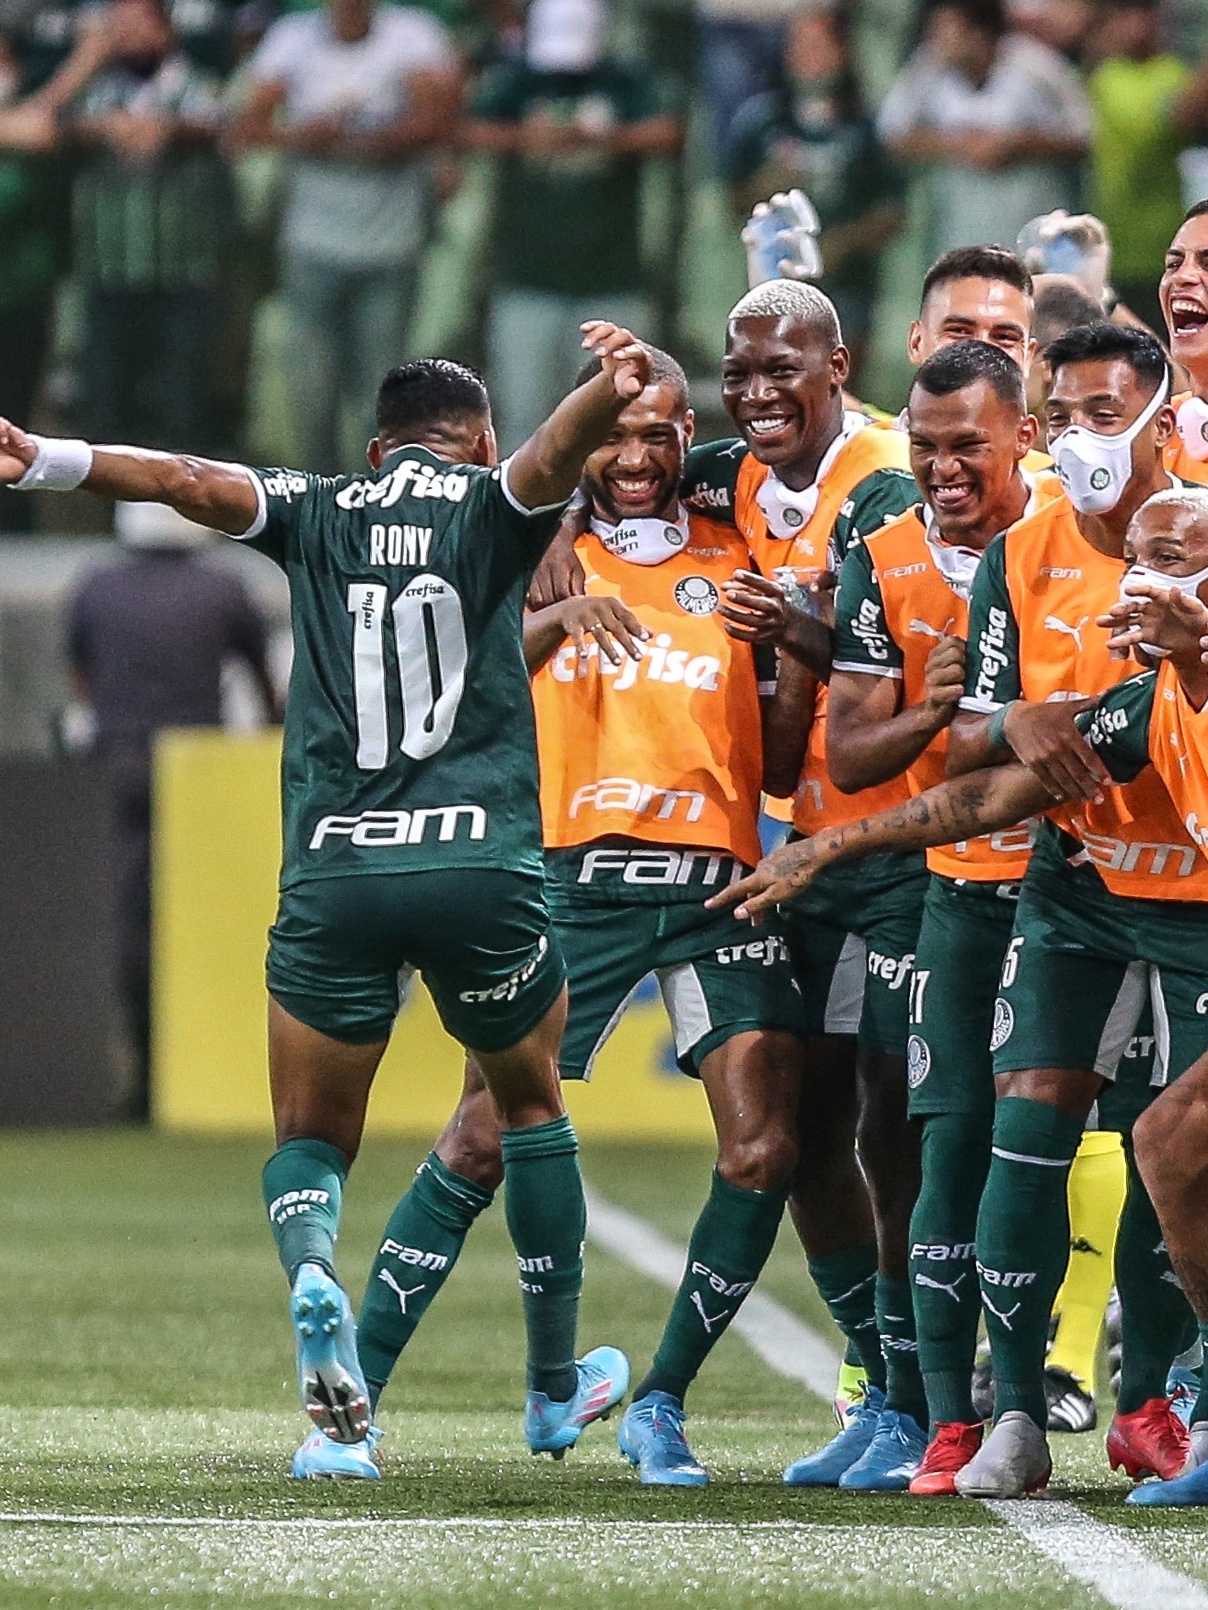 Veja dia, horário e estádio de estreia do Palmeiras no Mundial de Clubes -  01/12/2021 - UOL Esporte